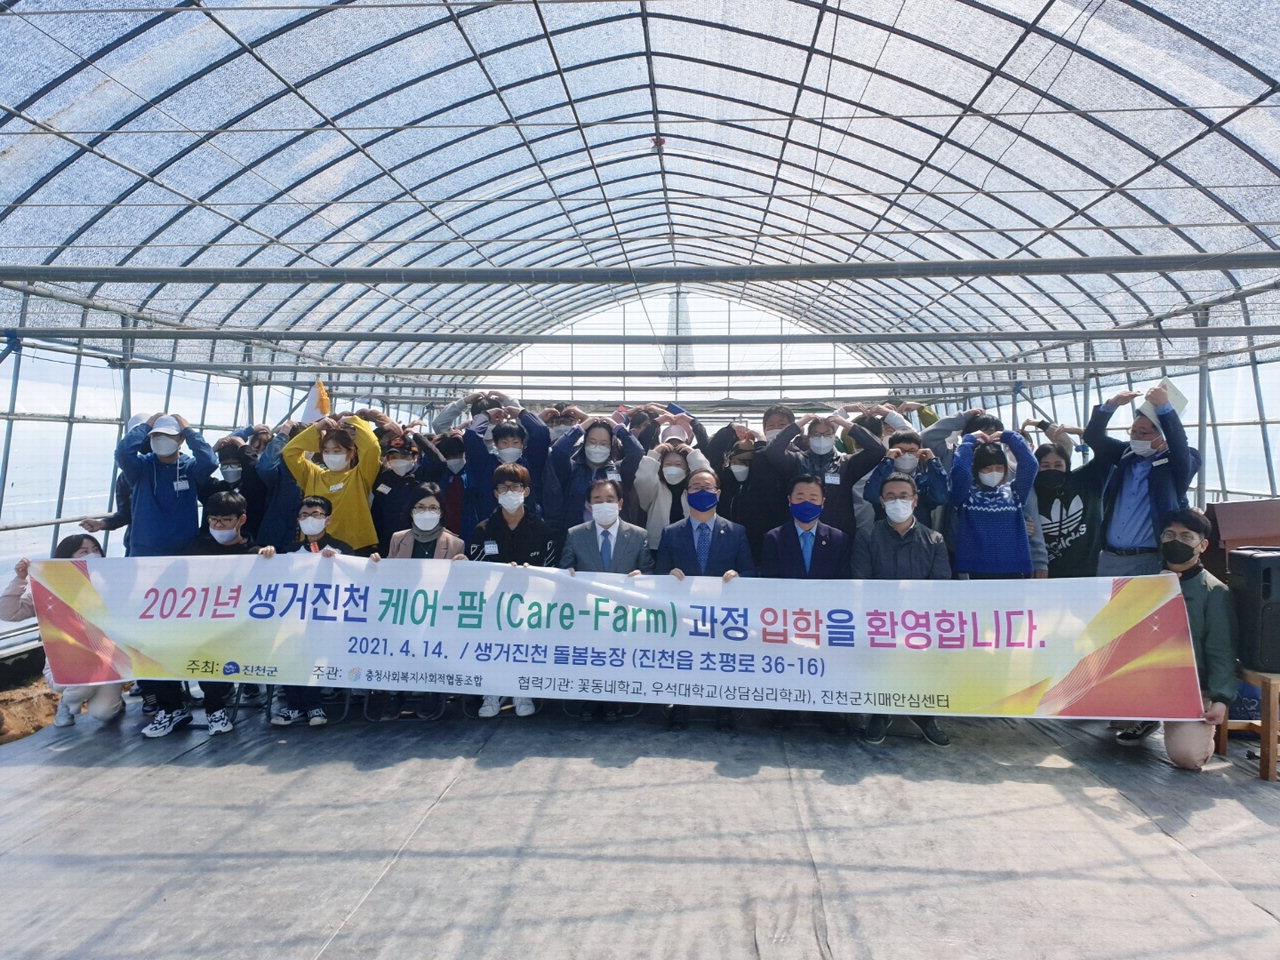 진천군의 특성을 반영한 농촌형 노인복지 모델로 주목을 받고 있는 '생거진천형 통합돌봄 선도사업' 활동 모습